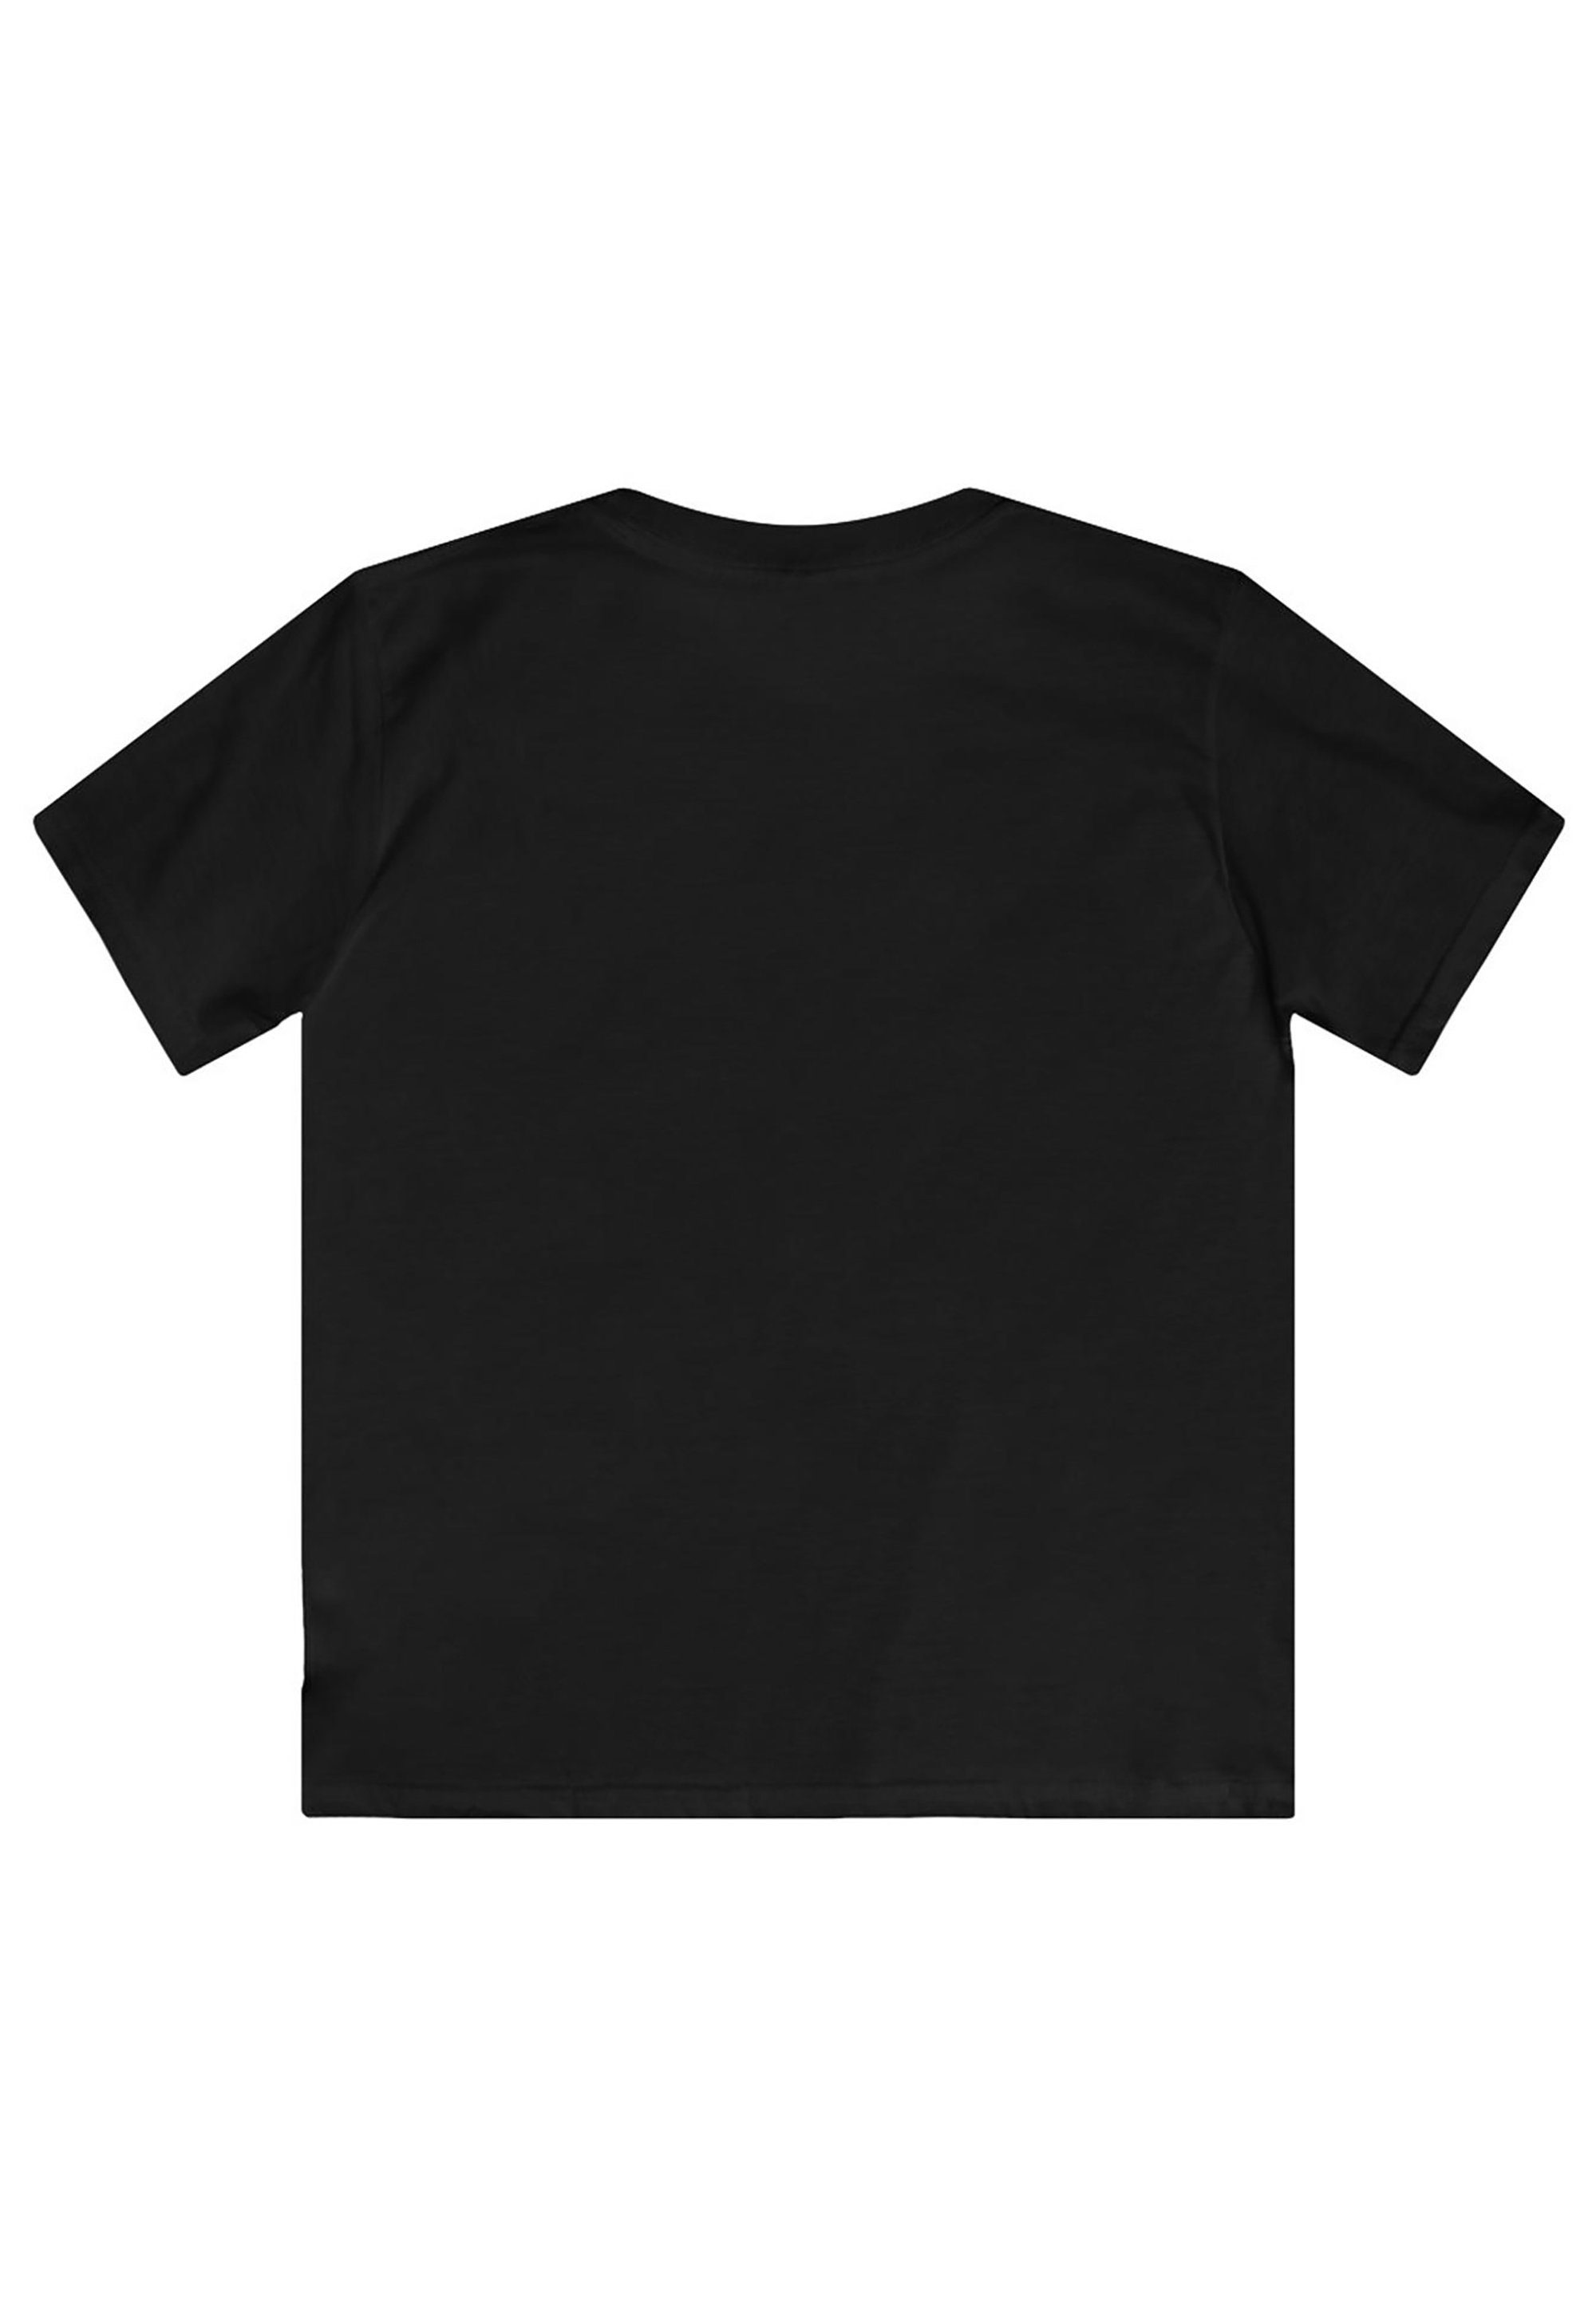 F4NT4STIC Kinder,Premium Unisex Patrol Skye Happy T-Shirt be Merch,Jungen,Mädchen,Bedruckt schwarz Paw